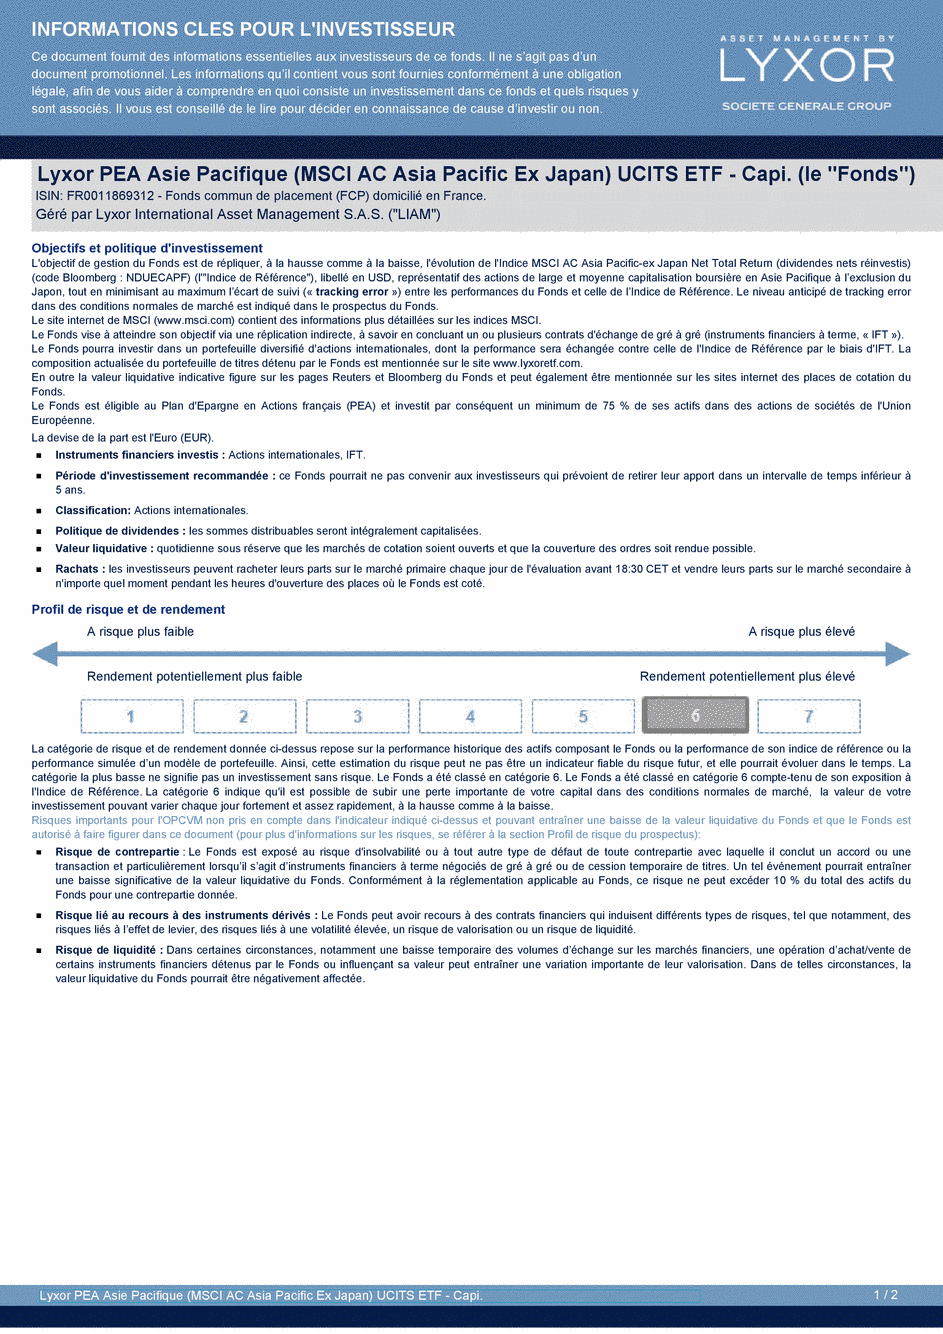 DICI Lyxor PEA Asie Pacifique (MSCI AC Asia Pacific Ex Japan) UCITS ETF - Capi. - 15/02/2019 - Français